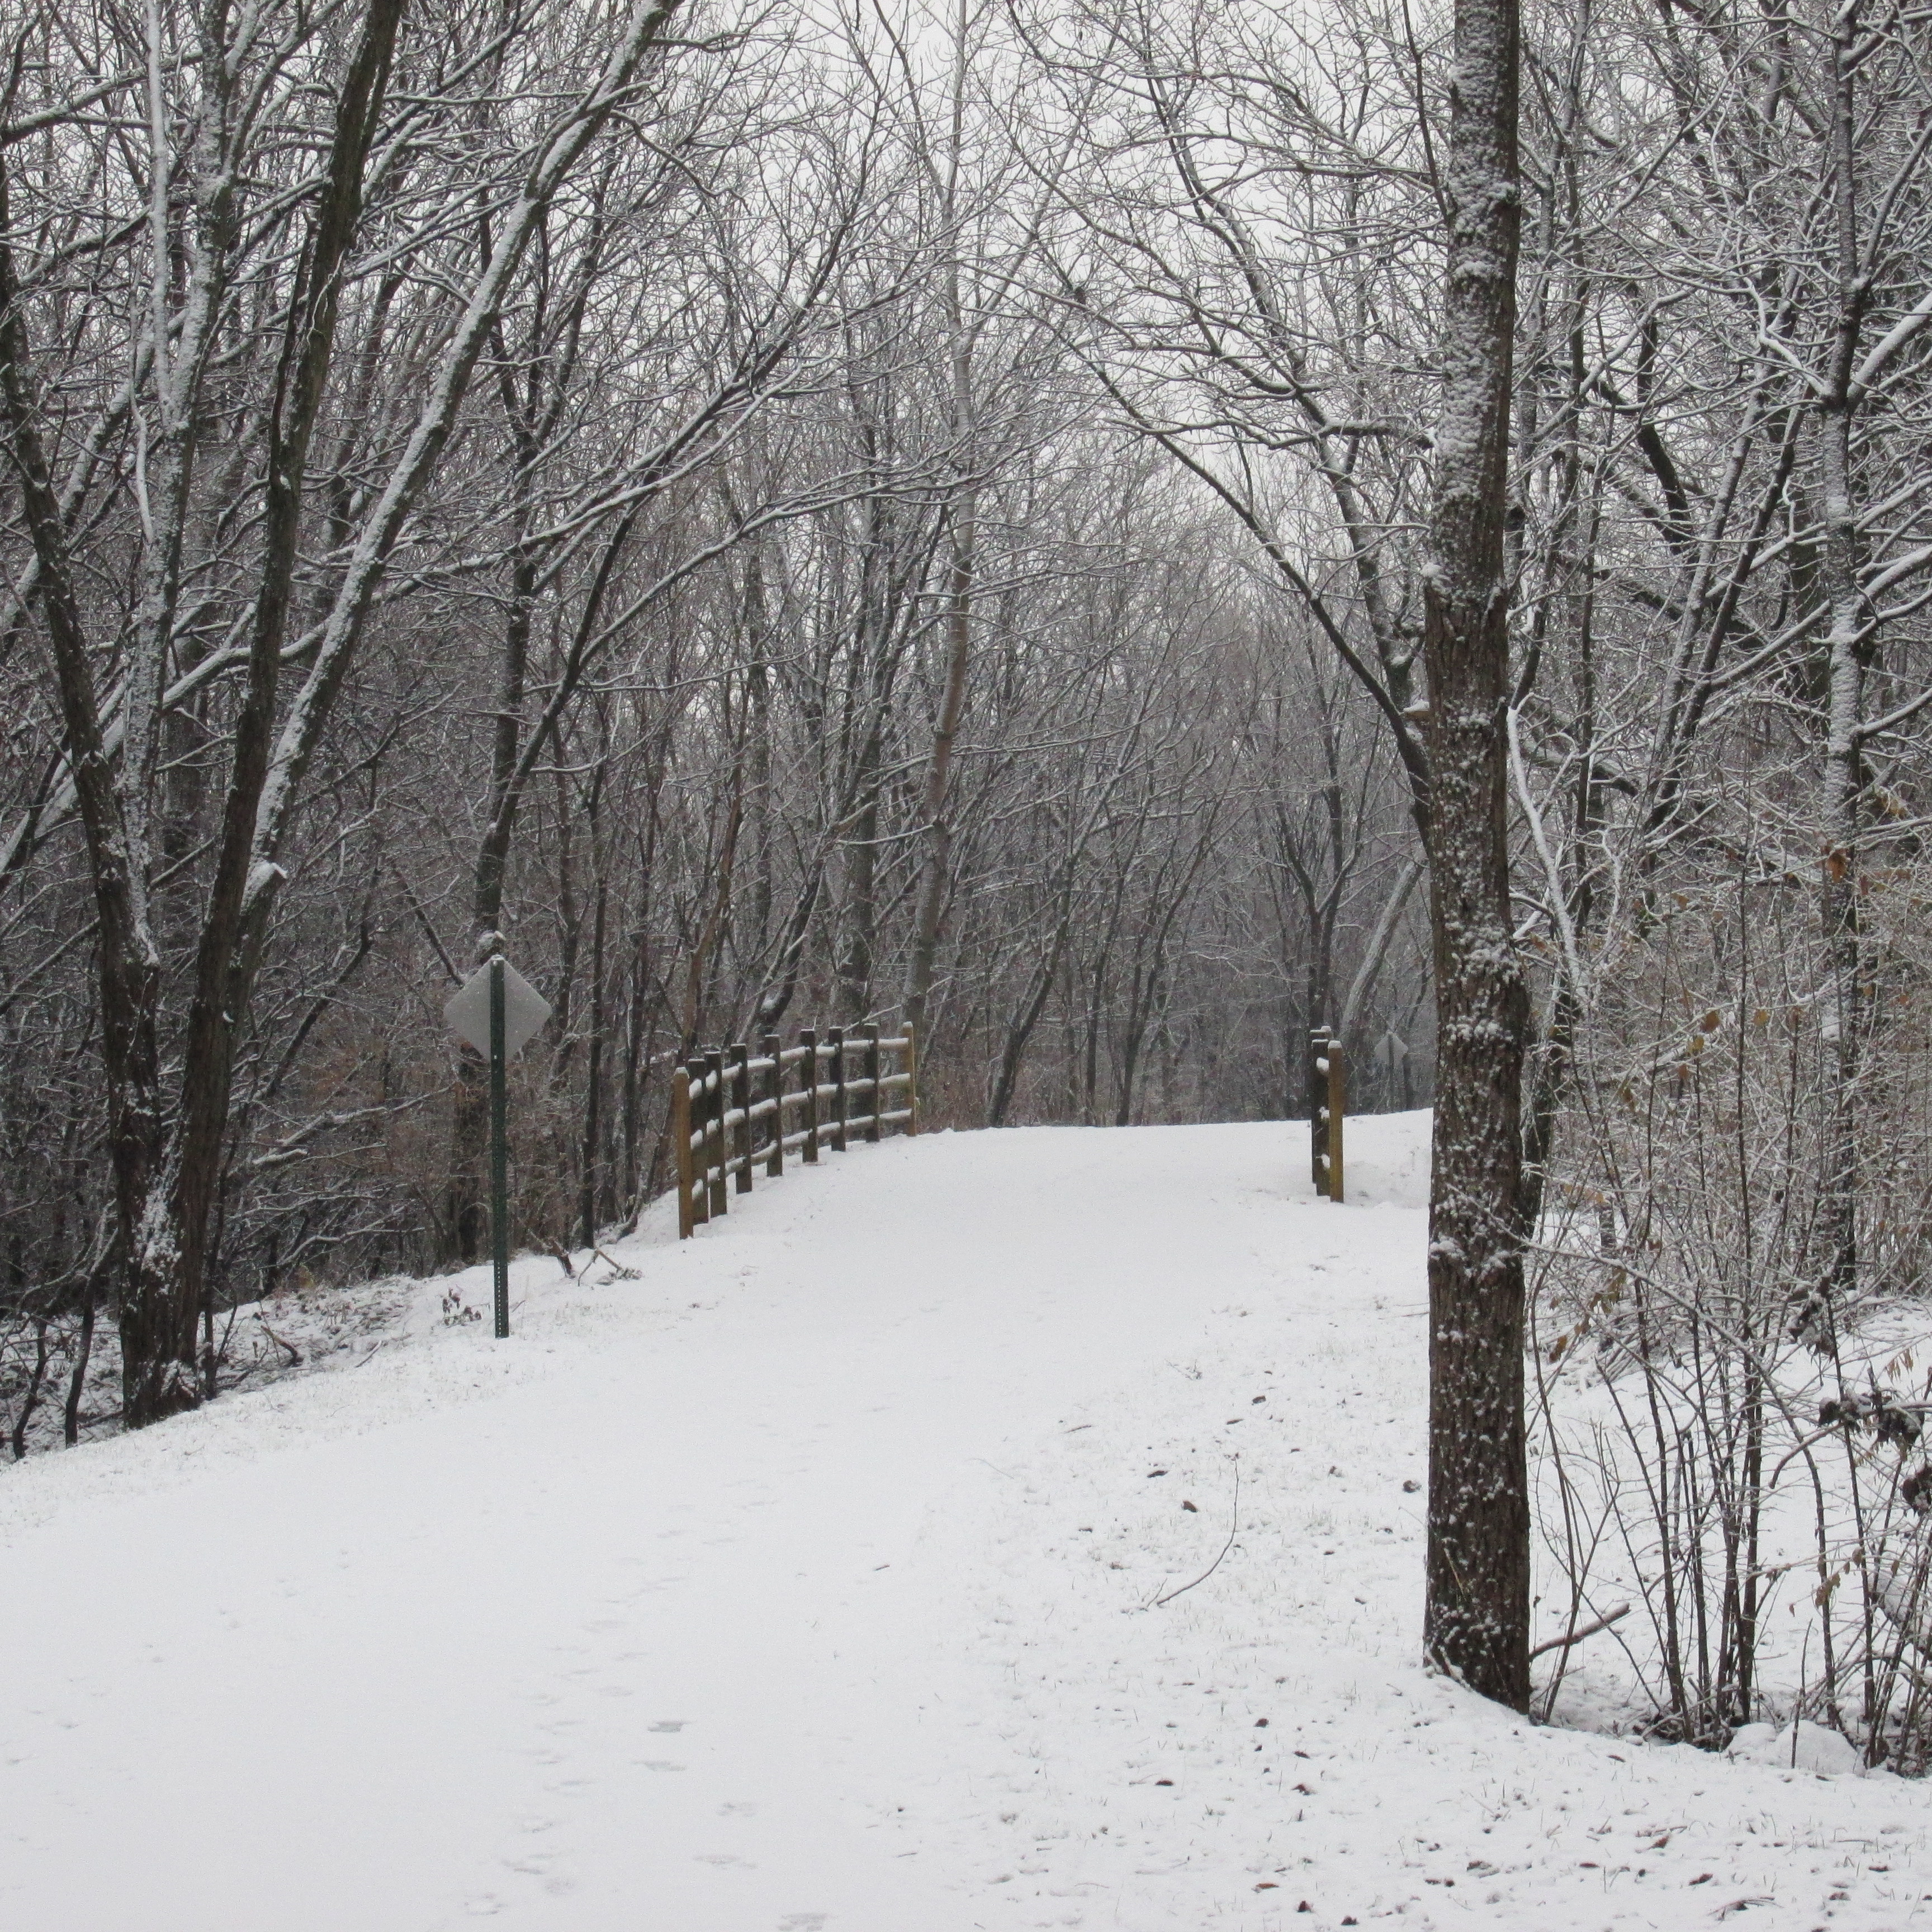 Snowy Walk in the Woods – Little Backyard World